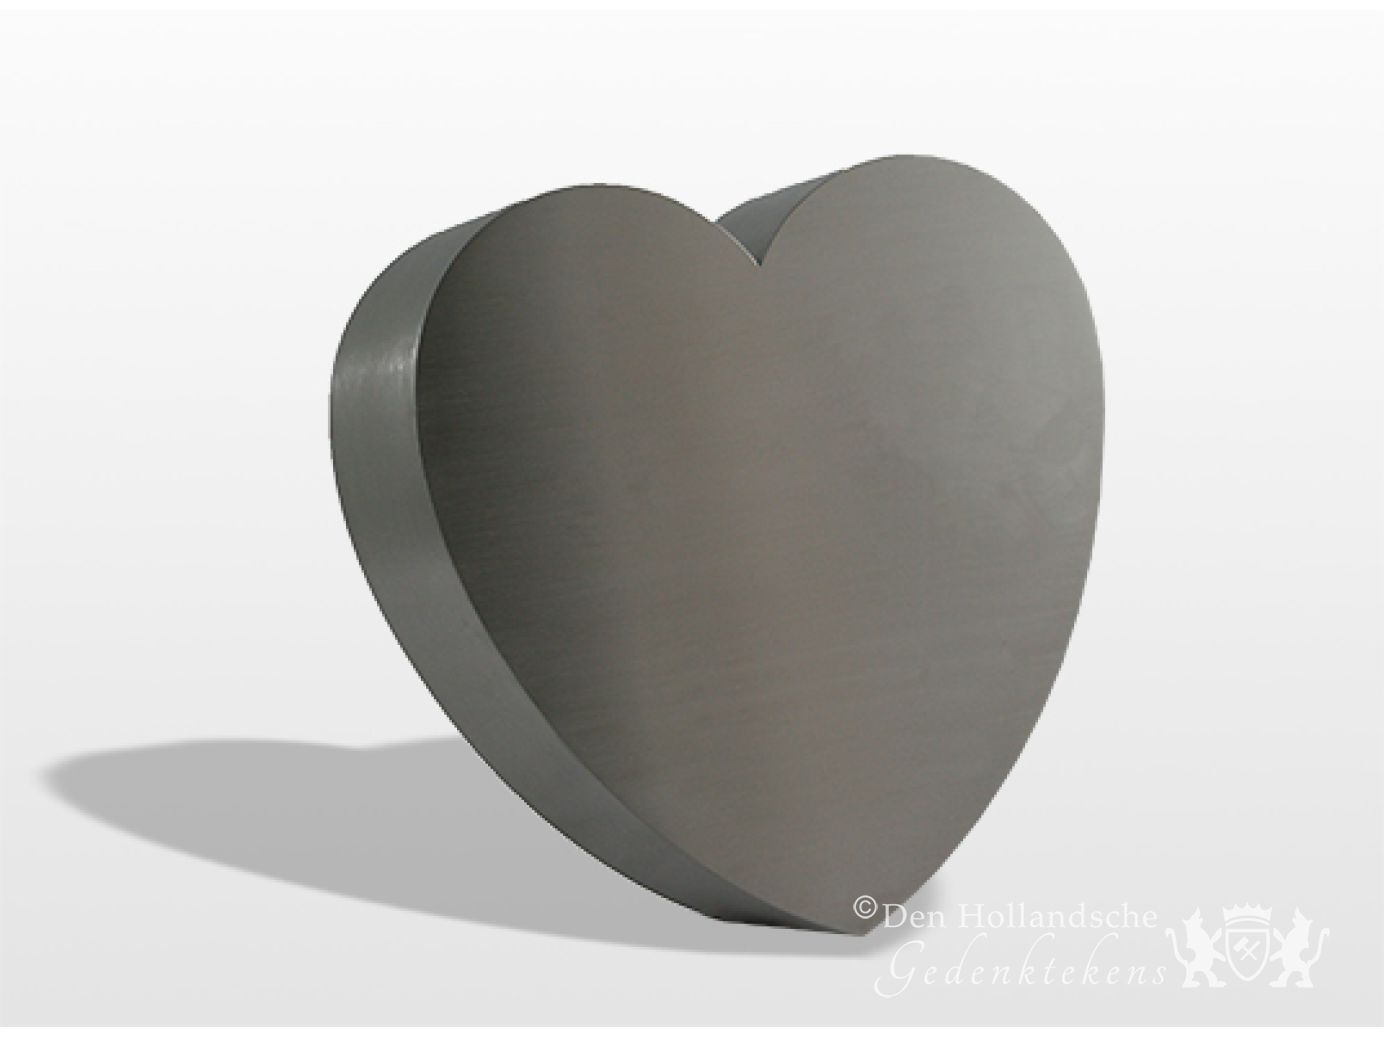 Uitgelezene Cortenstaal urn hartvorm | Den Hollandsche Gedenktekens | 10709 CN-14